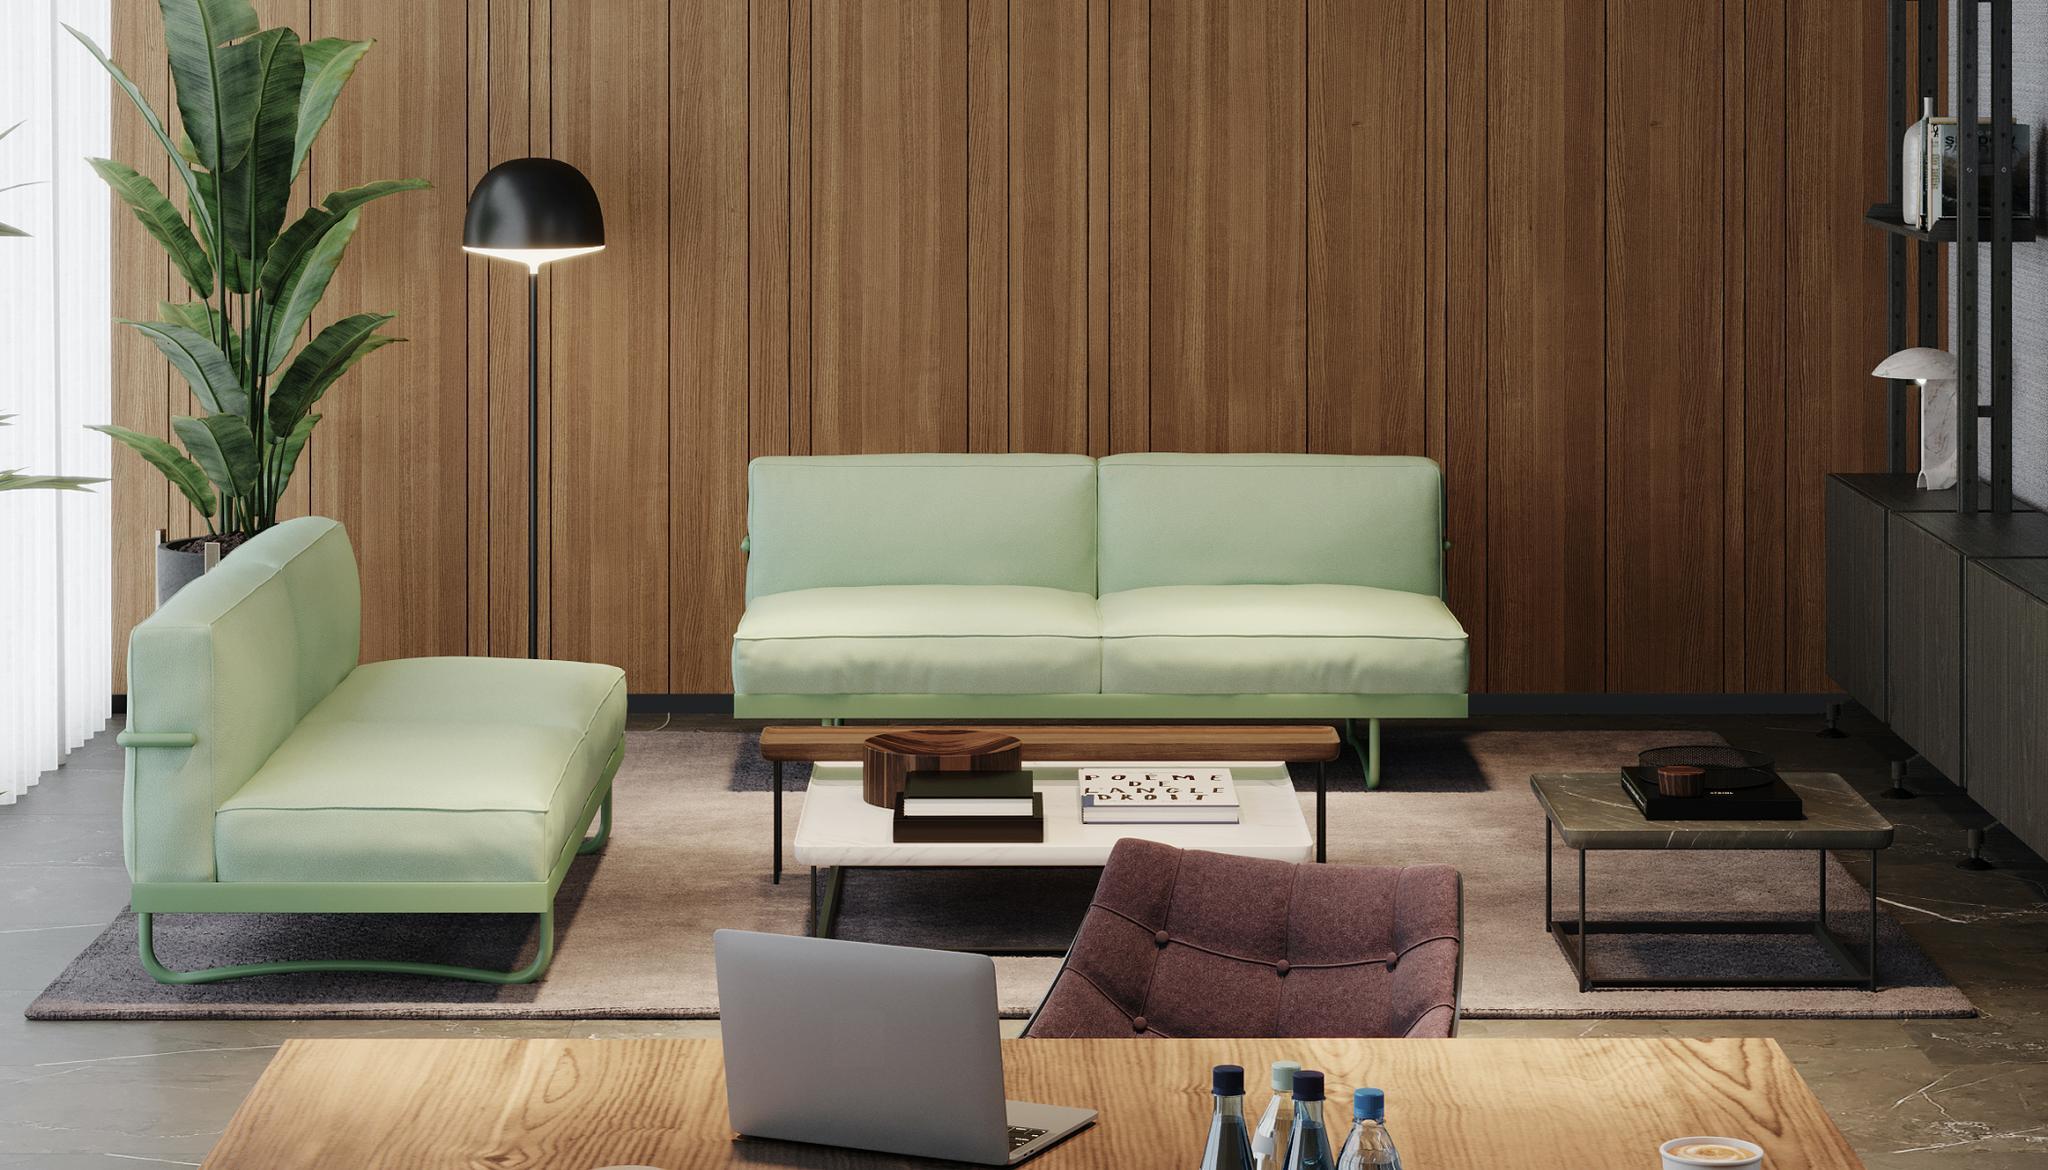 Sofa, entworfen von Le Corbusier, Pierre Jeanneret und Charlotte Perriand im Jahr 1934. 2014 von Cassina neu aufgelegt. Hergestellt von Cassina in Italien.

Zeitgenössische und bequeme Linien für dieses Sofa, das von Le Corbusier für seine Pariser